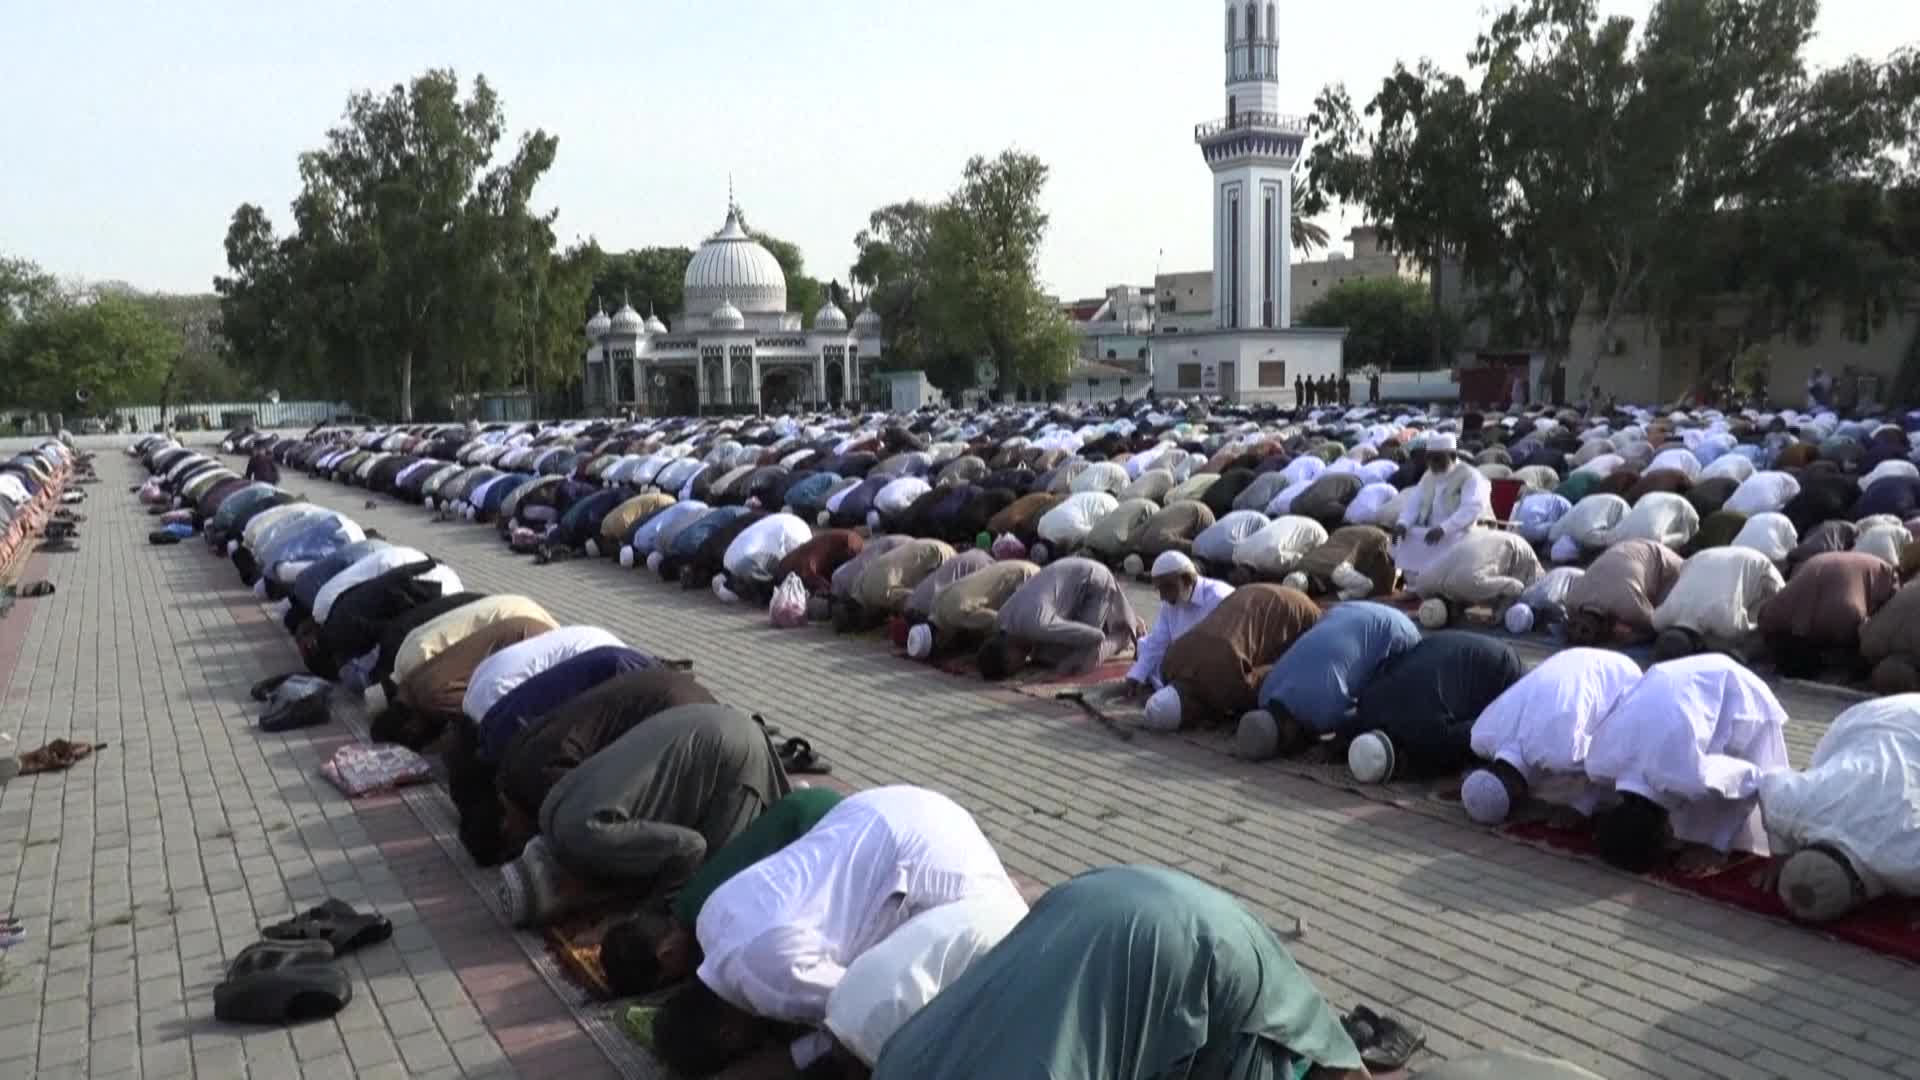 باكستان _ المسلمون يؤدون صلاة عيد الفطر في مسجد الجامع بمدينة روالبندي - snapshot 4.98